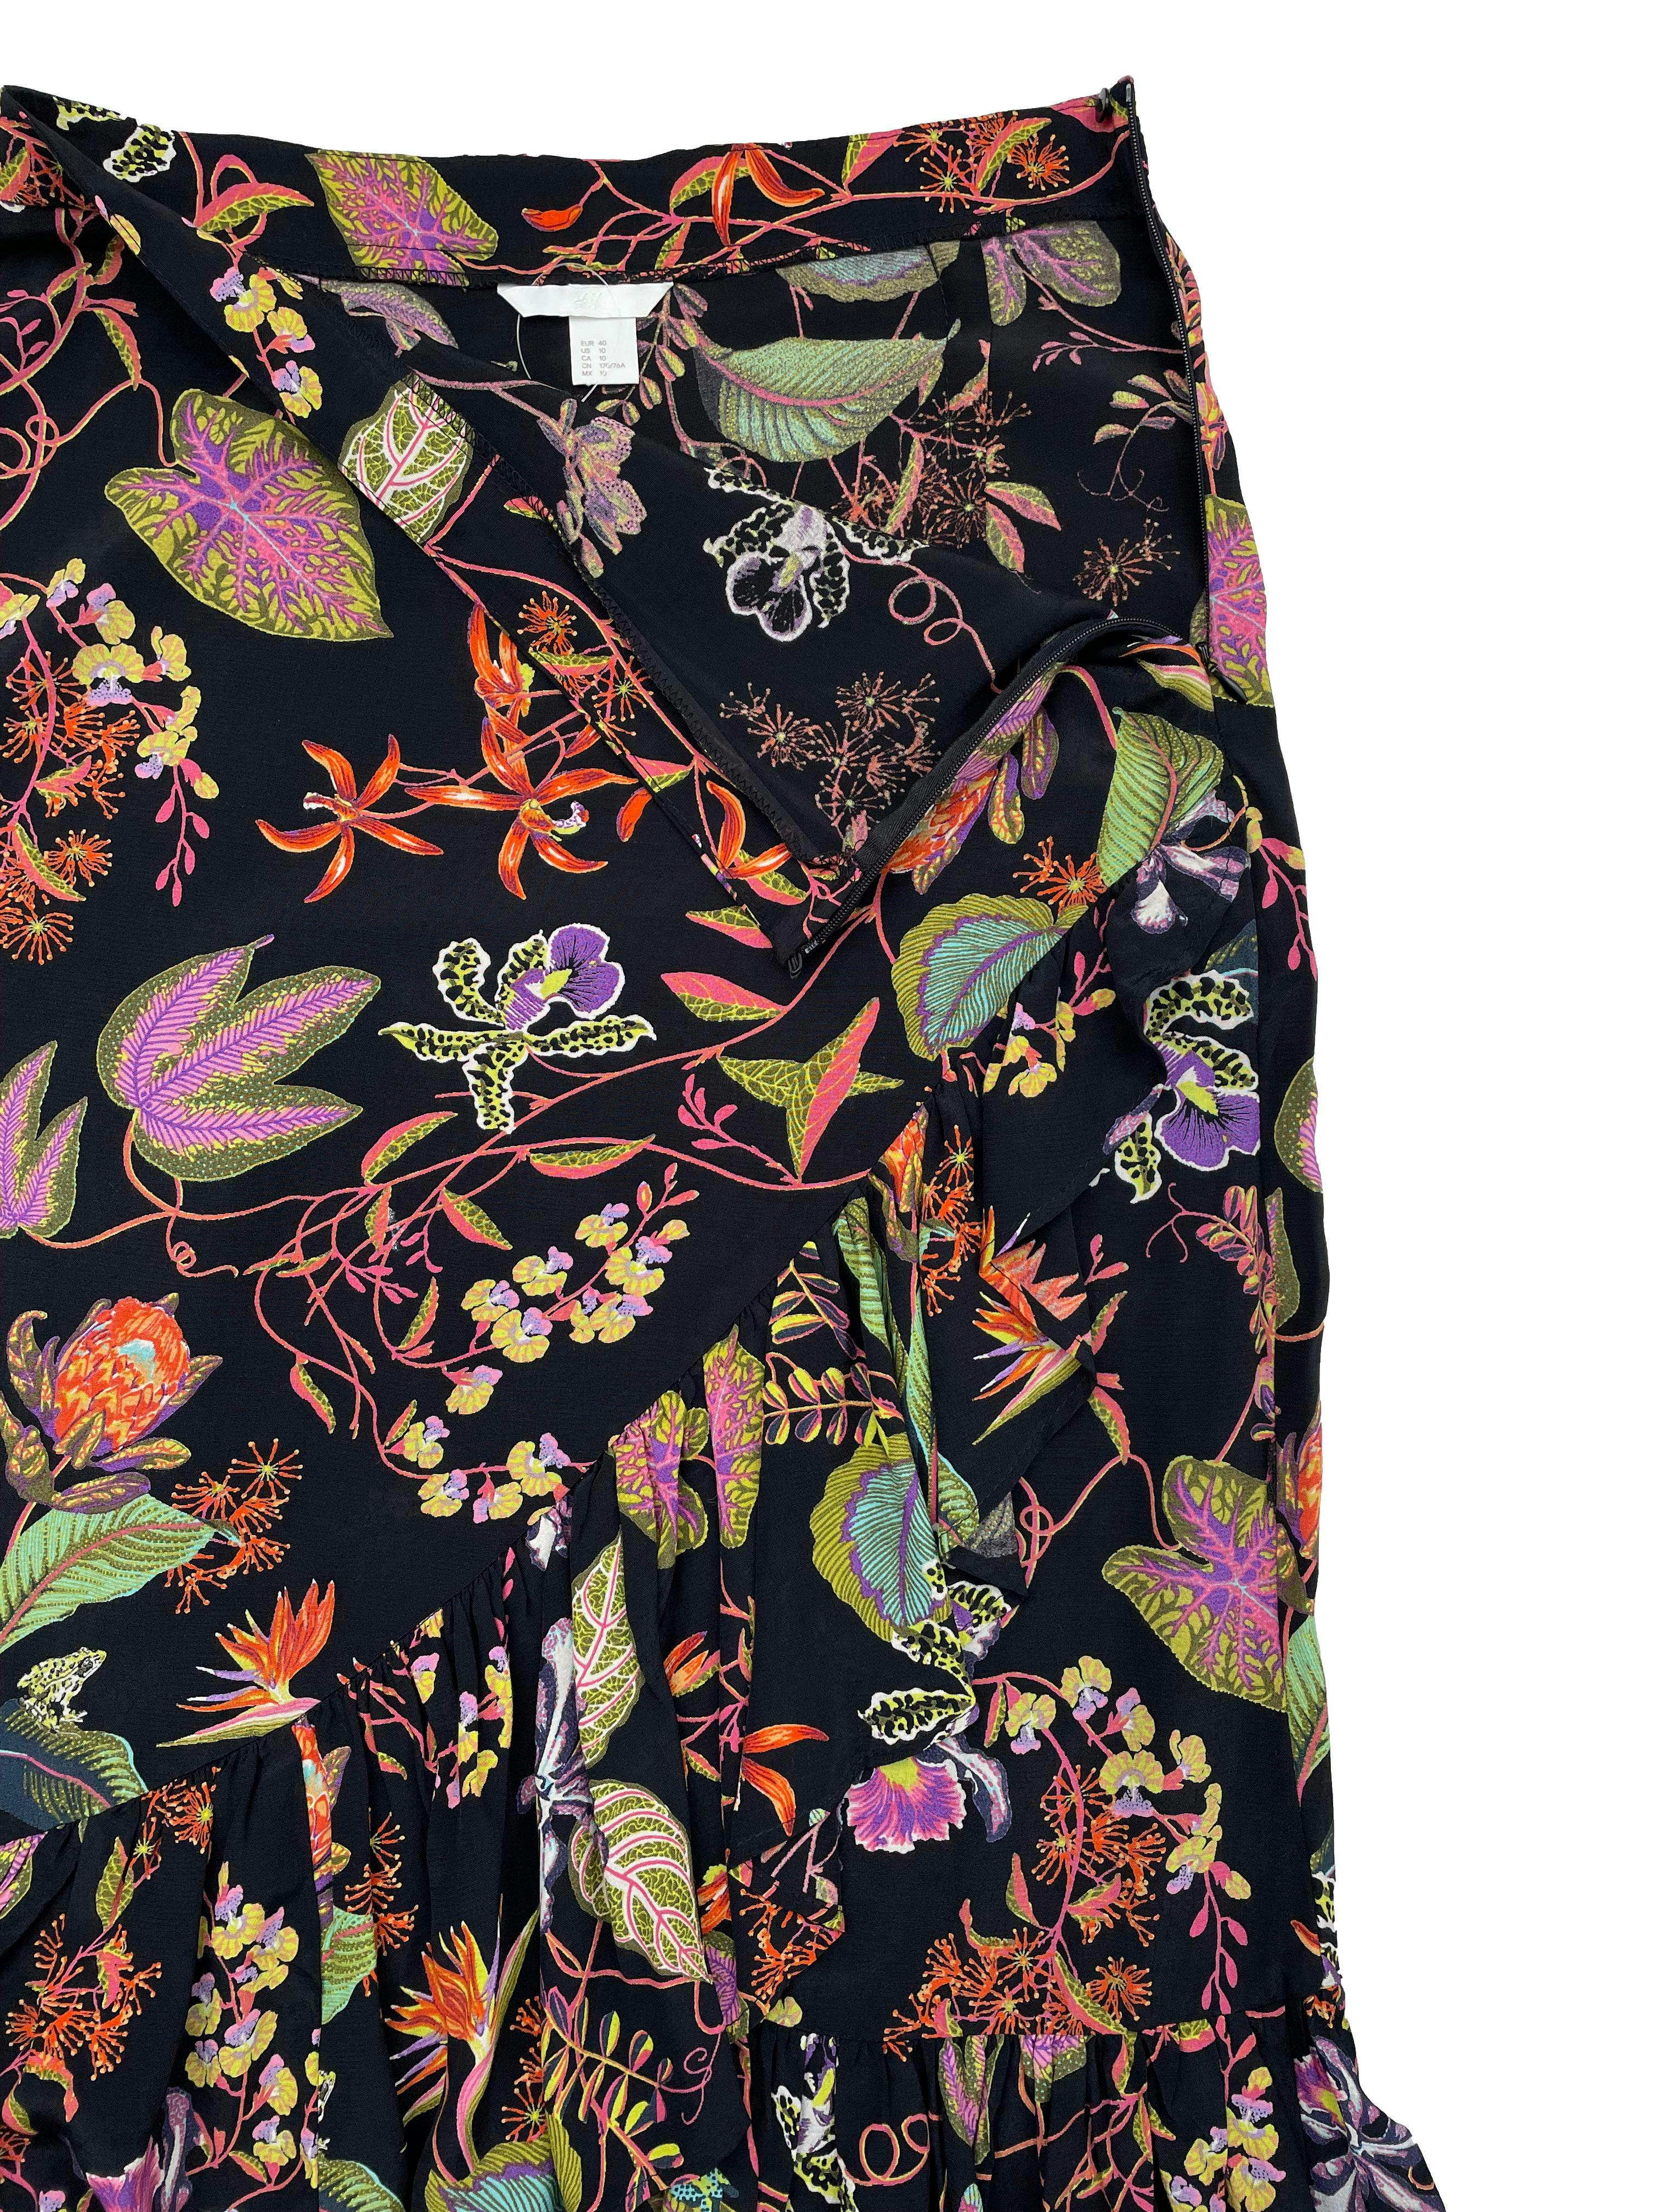 Falda midi H&M negra con estampado floral y volantes, tela fresca ligeramente satinada, cierre lateral invisible. Cintura 78cm, Largo 85cm.